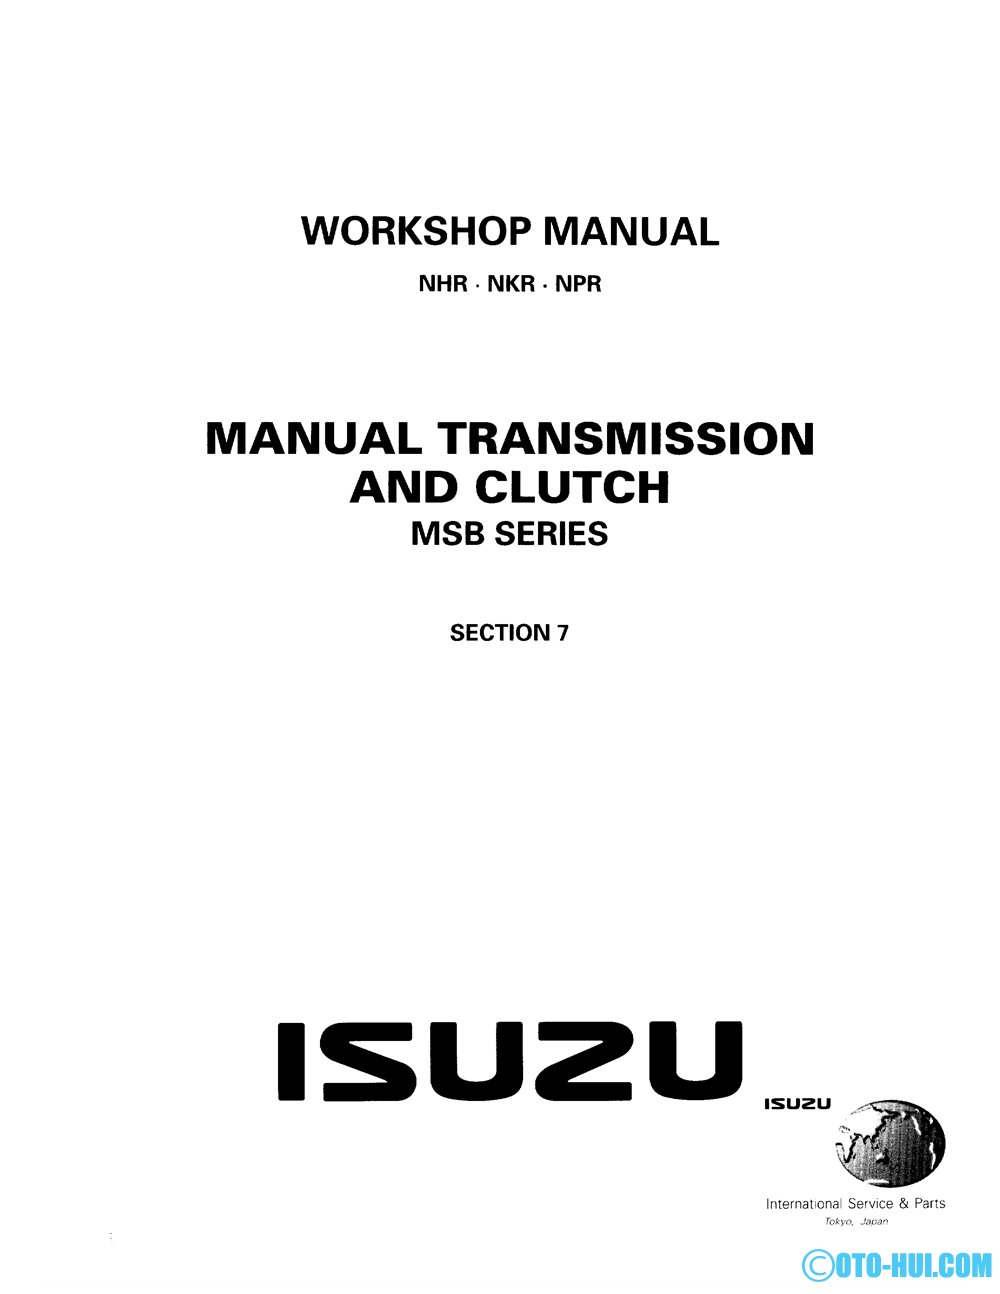 Hệ thống truyền lực xe isuzu n series (msb series)